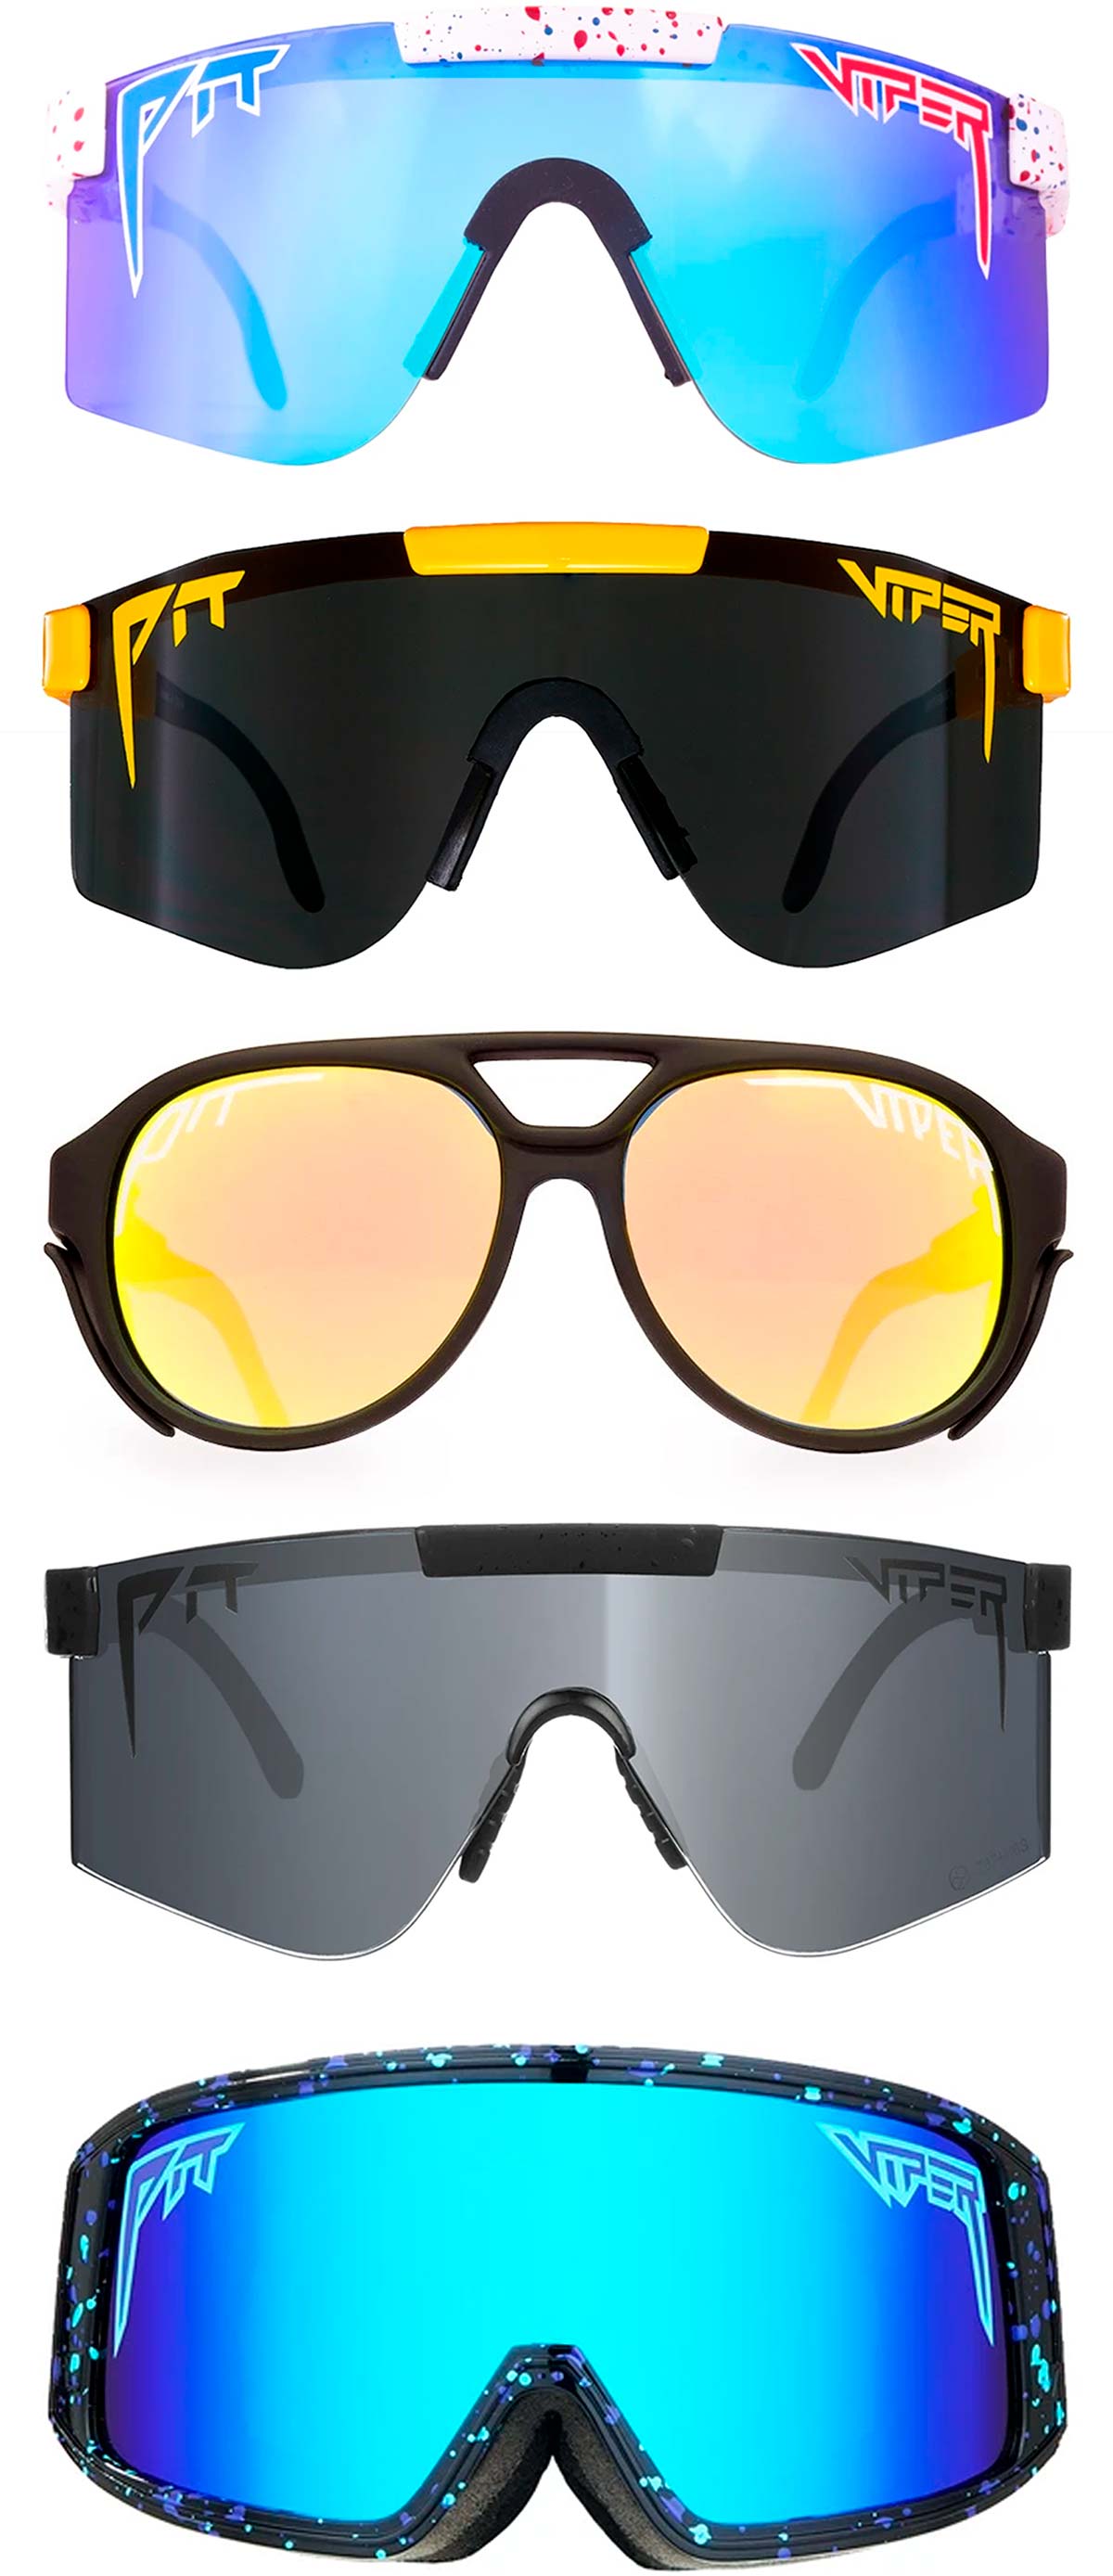 En TodoMountainBike: Vic Sports introduce en España la llamativa gama de gafas deportivas de Pit Viper